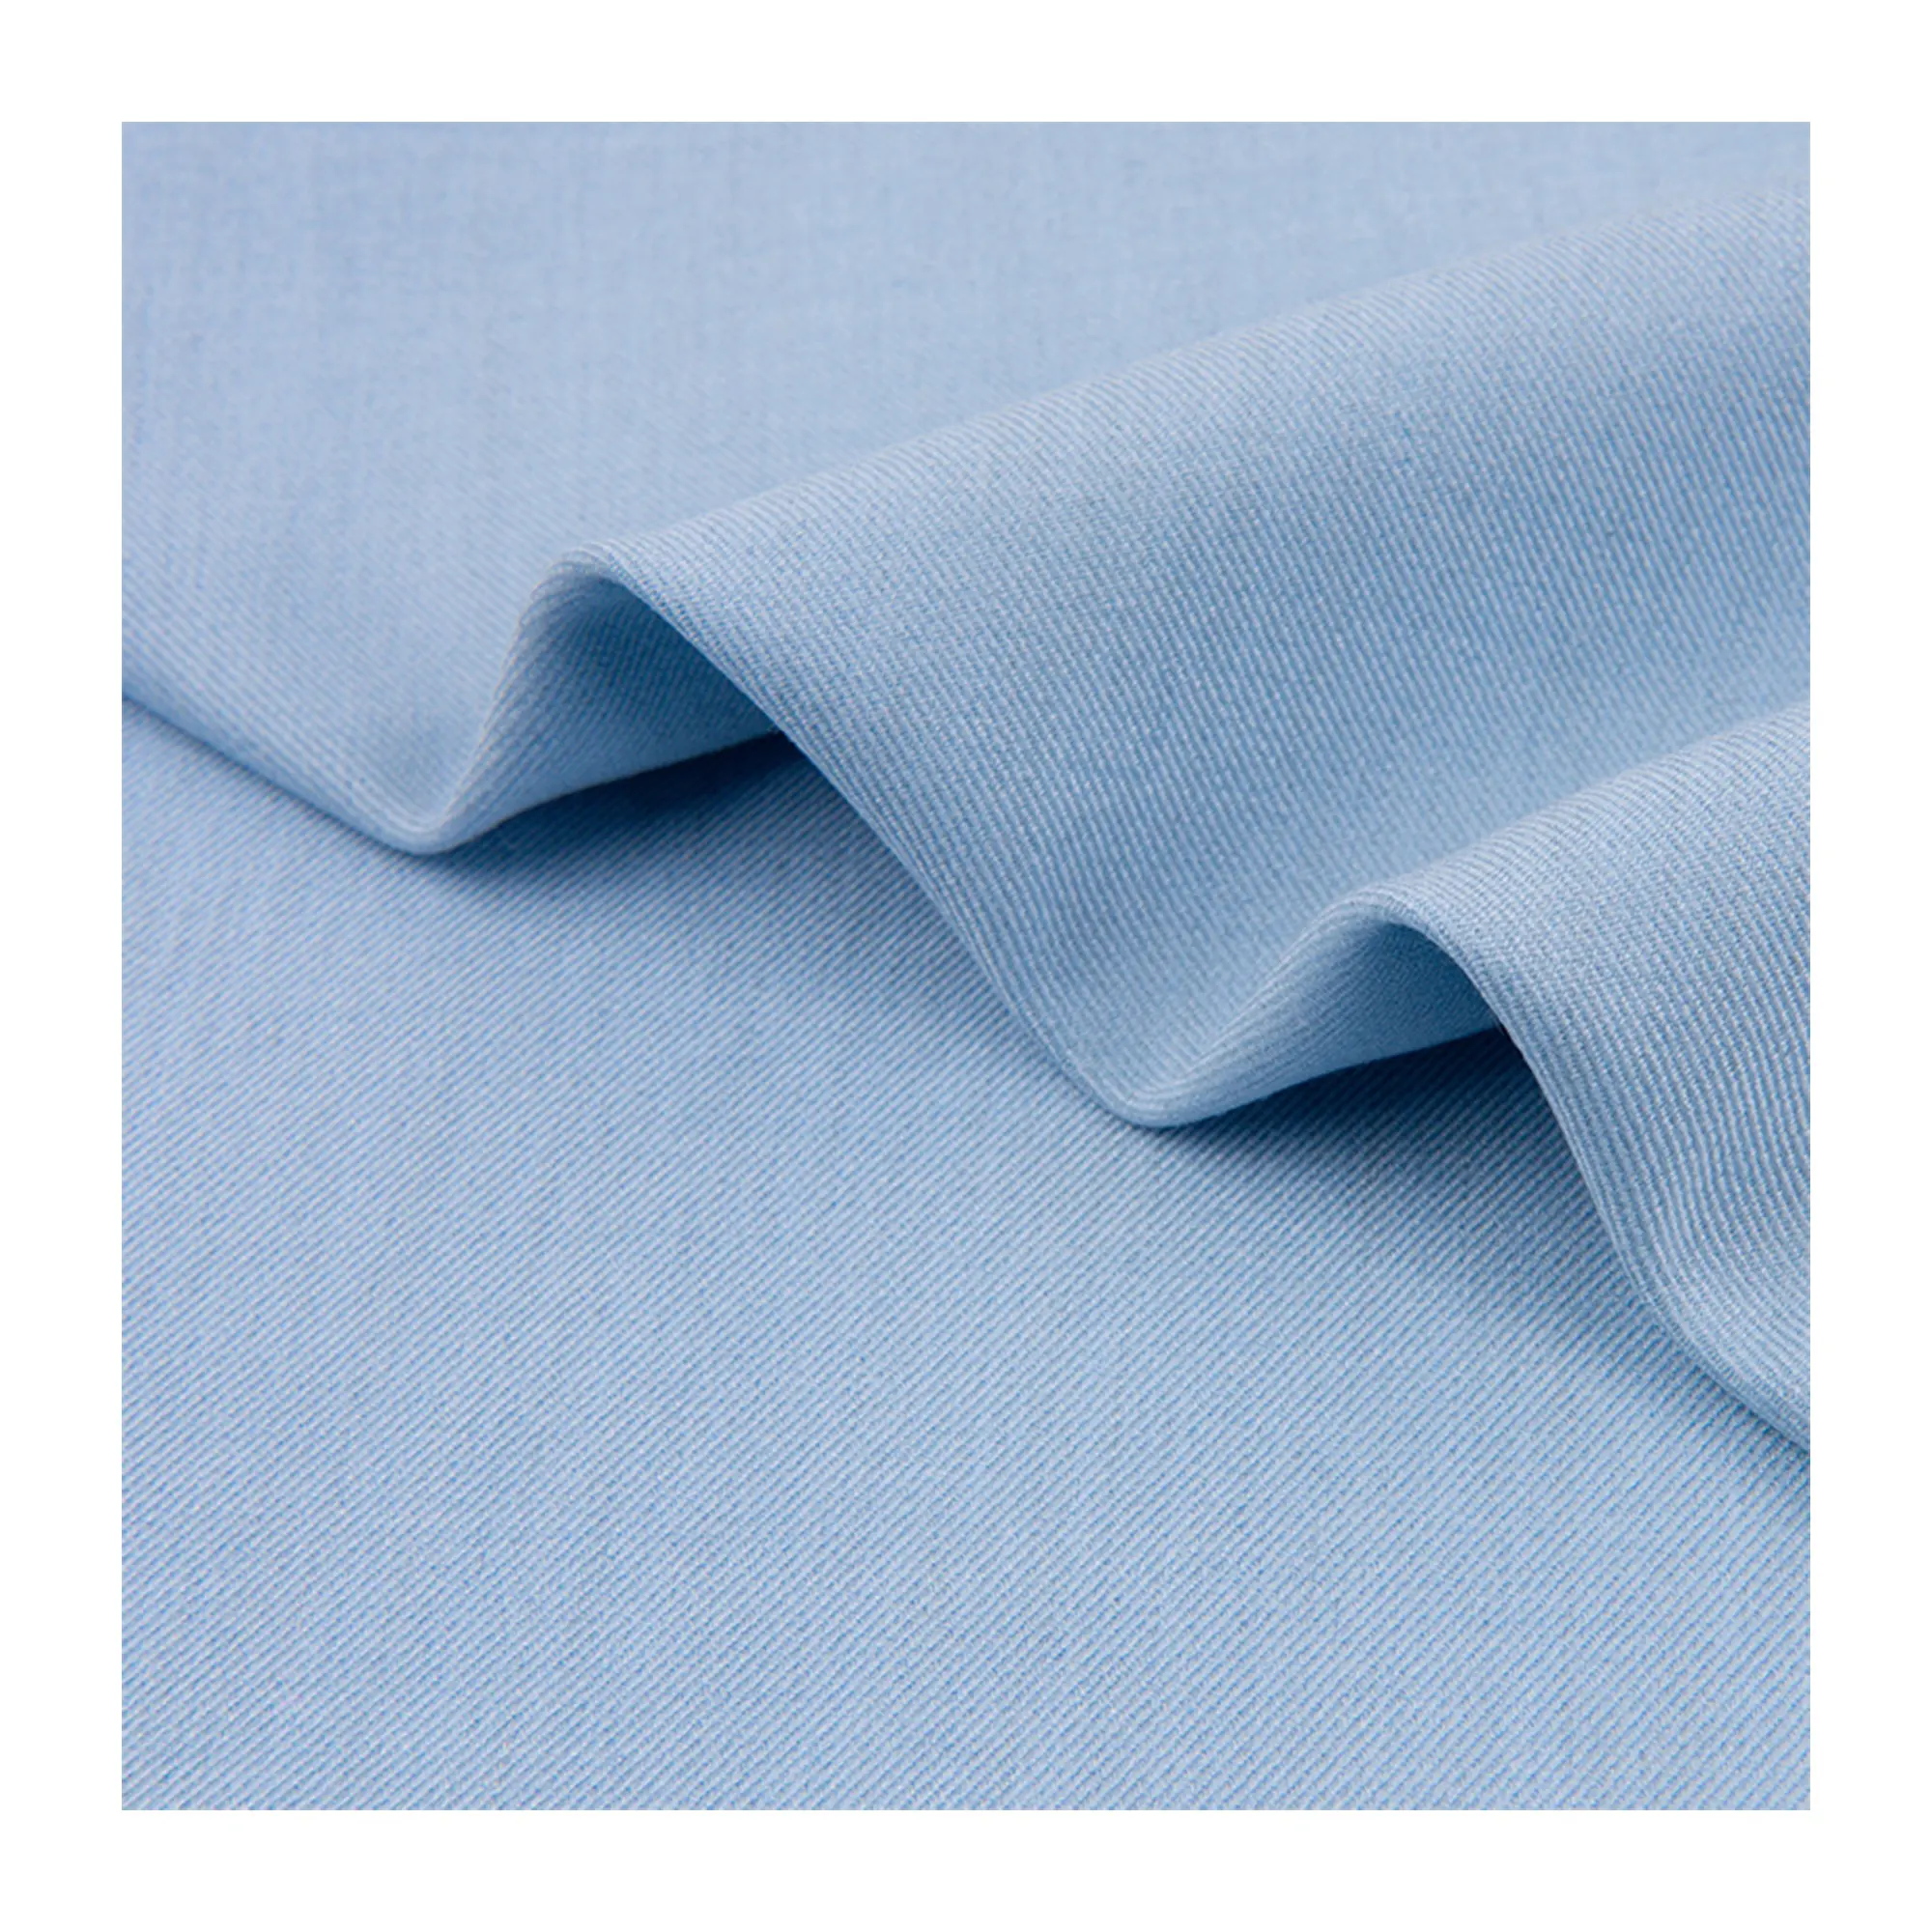 Tr 80% Polyester 20% Viscose Materiaal Stof Polyviscose Stof Gebruikt Voor Broekjas Jurk En Uniform